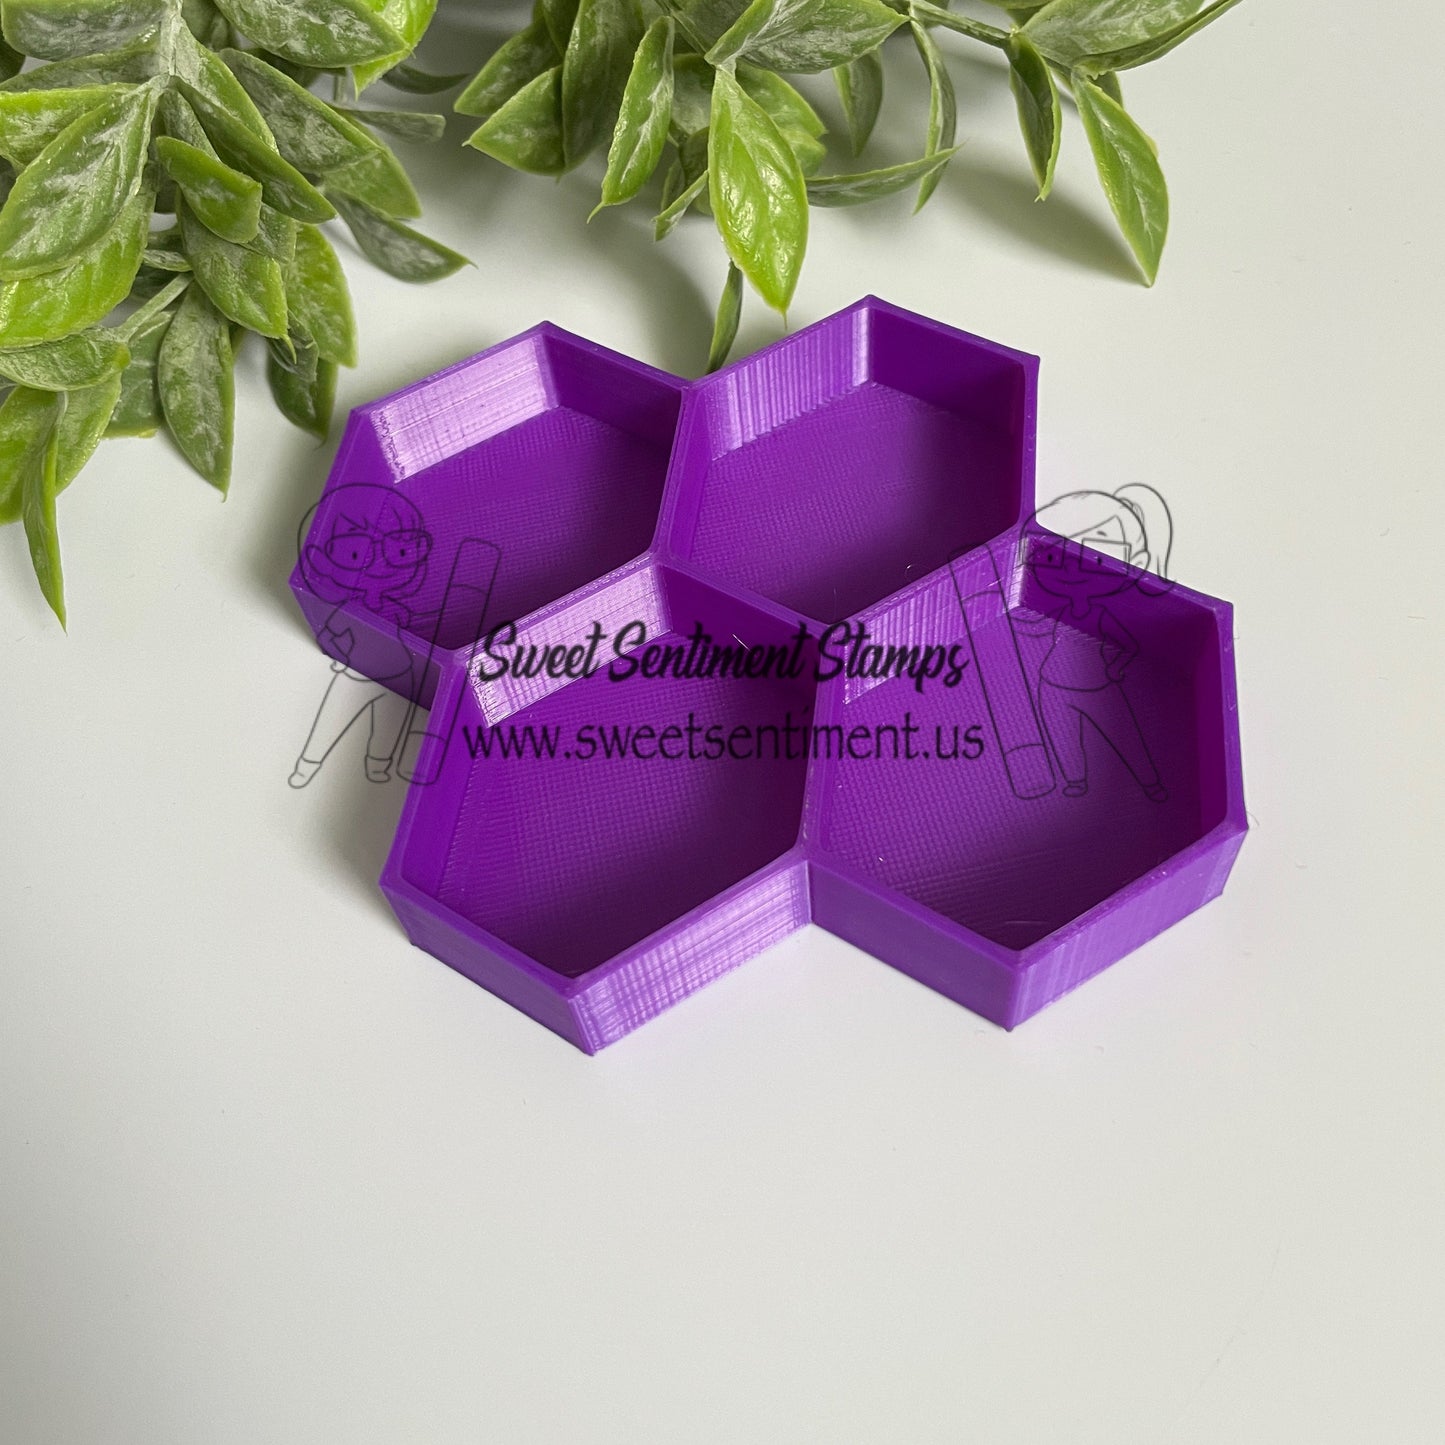 Honey Bowls by LeDoux Designs - Purple